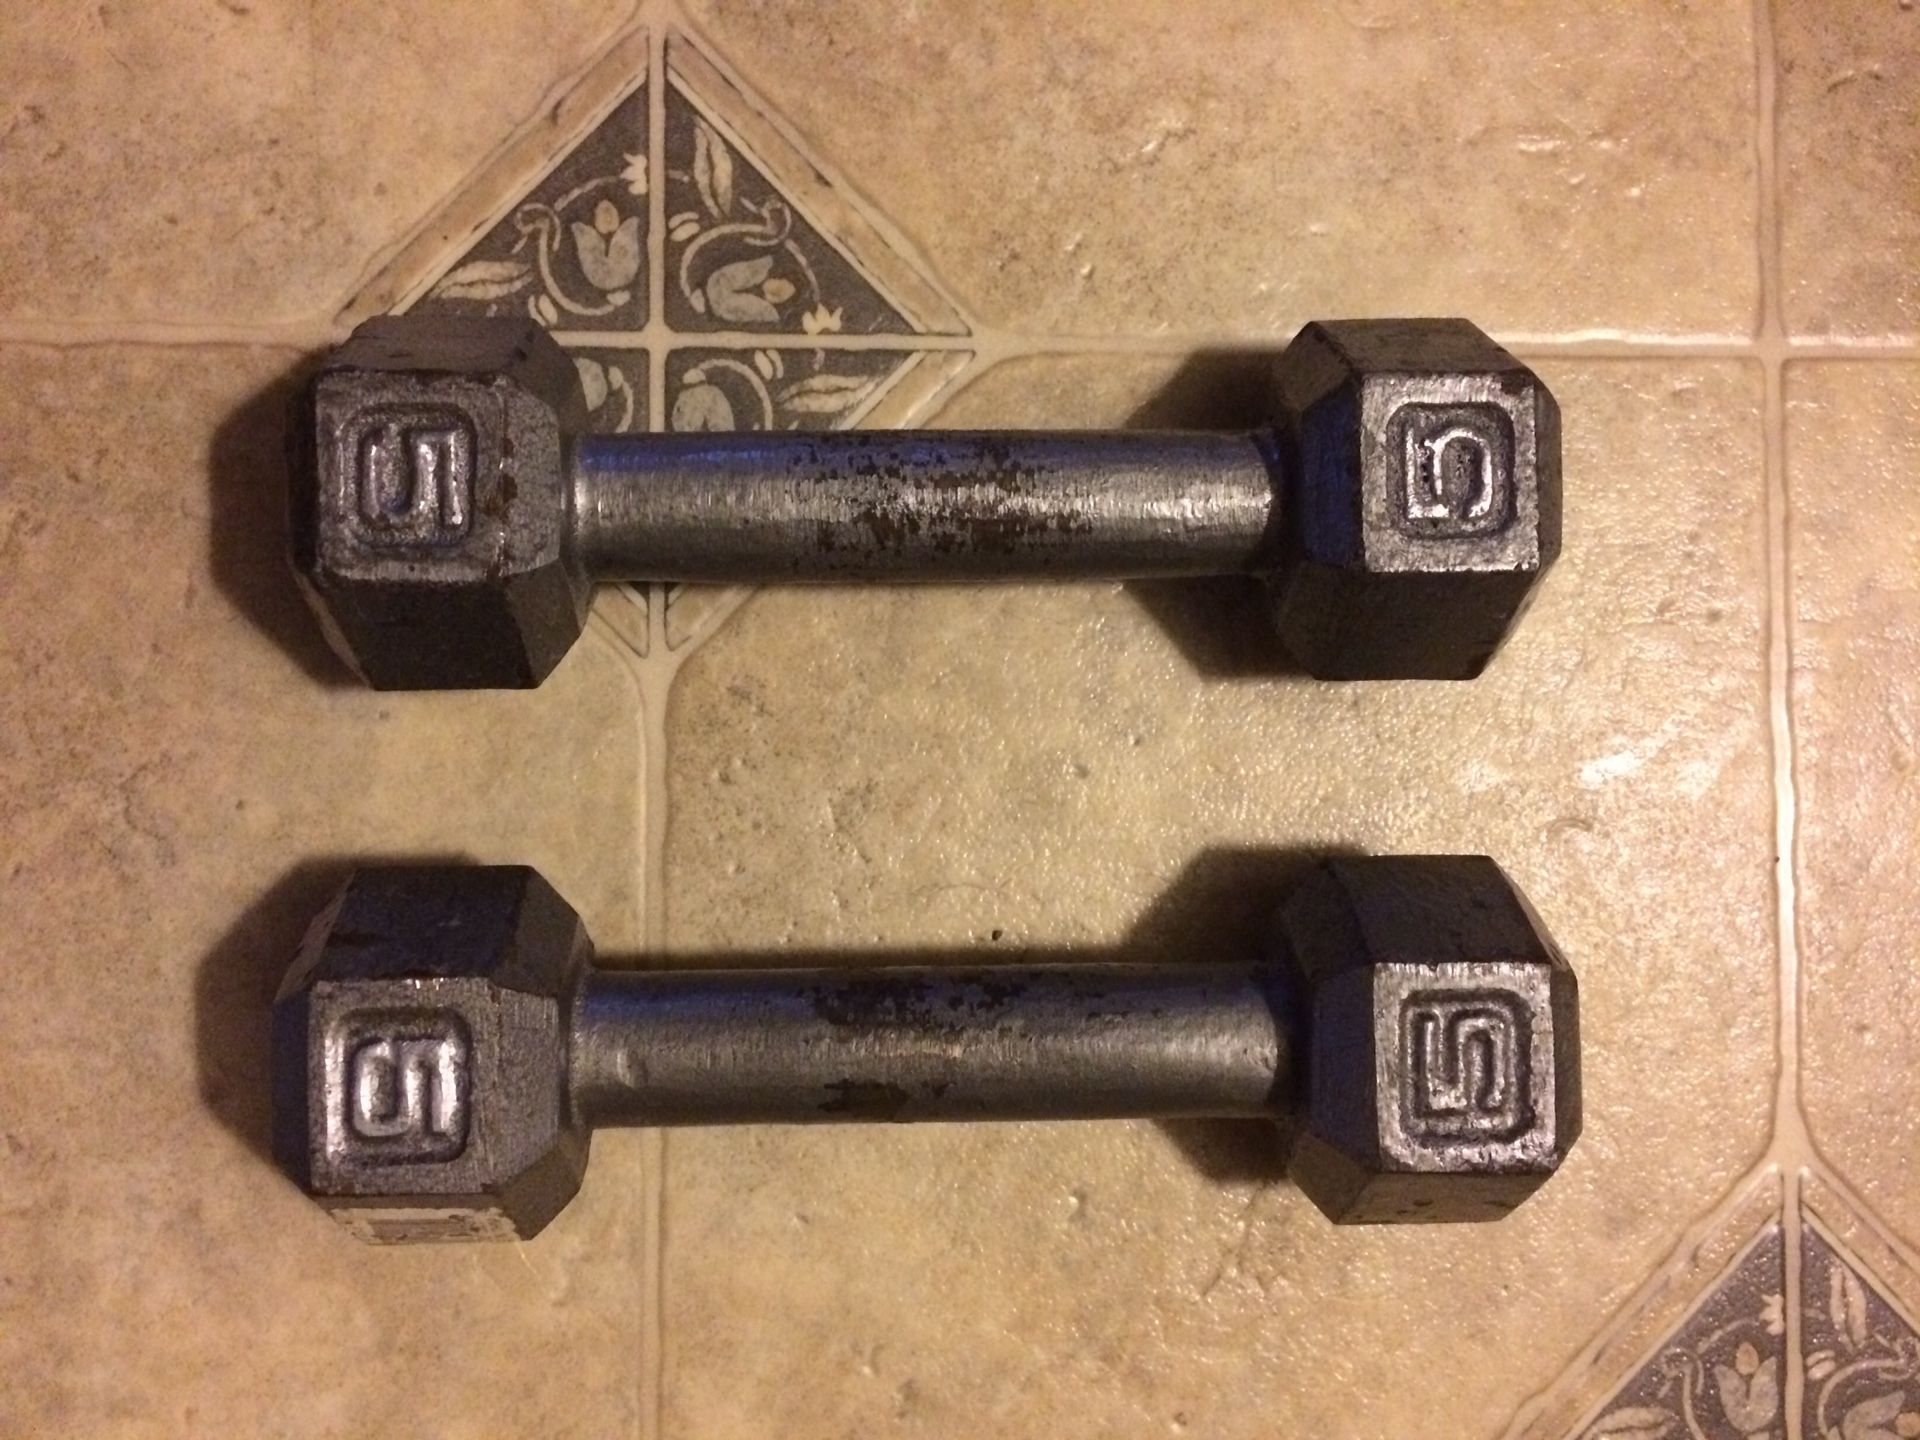 Dumbbells 5lb weights